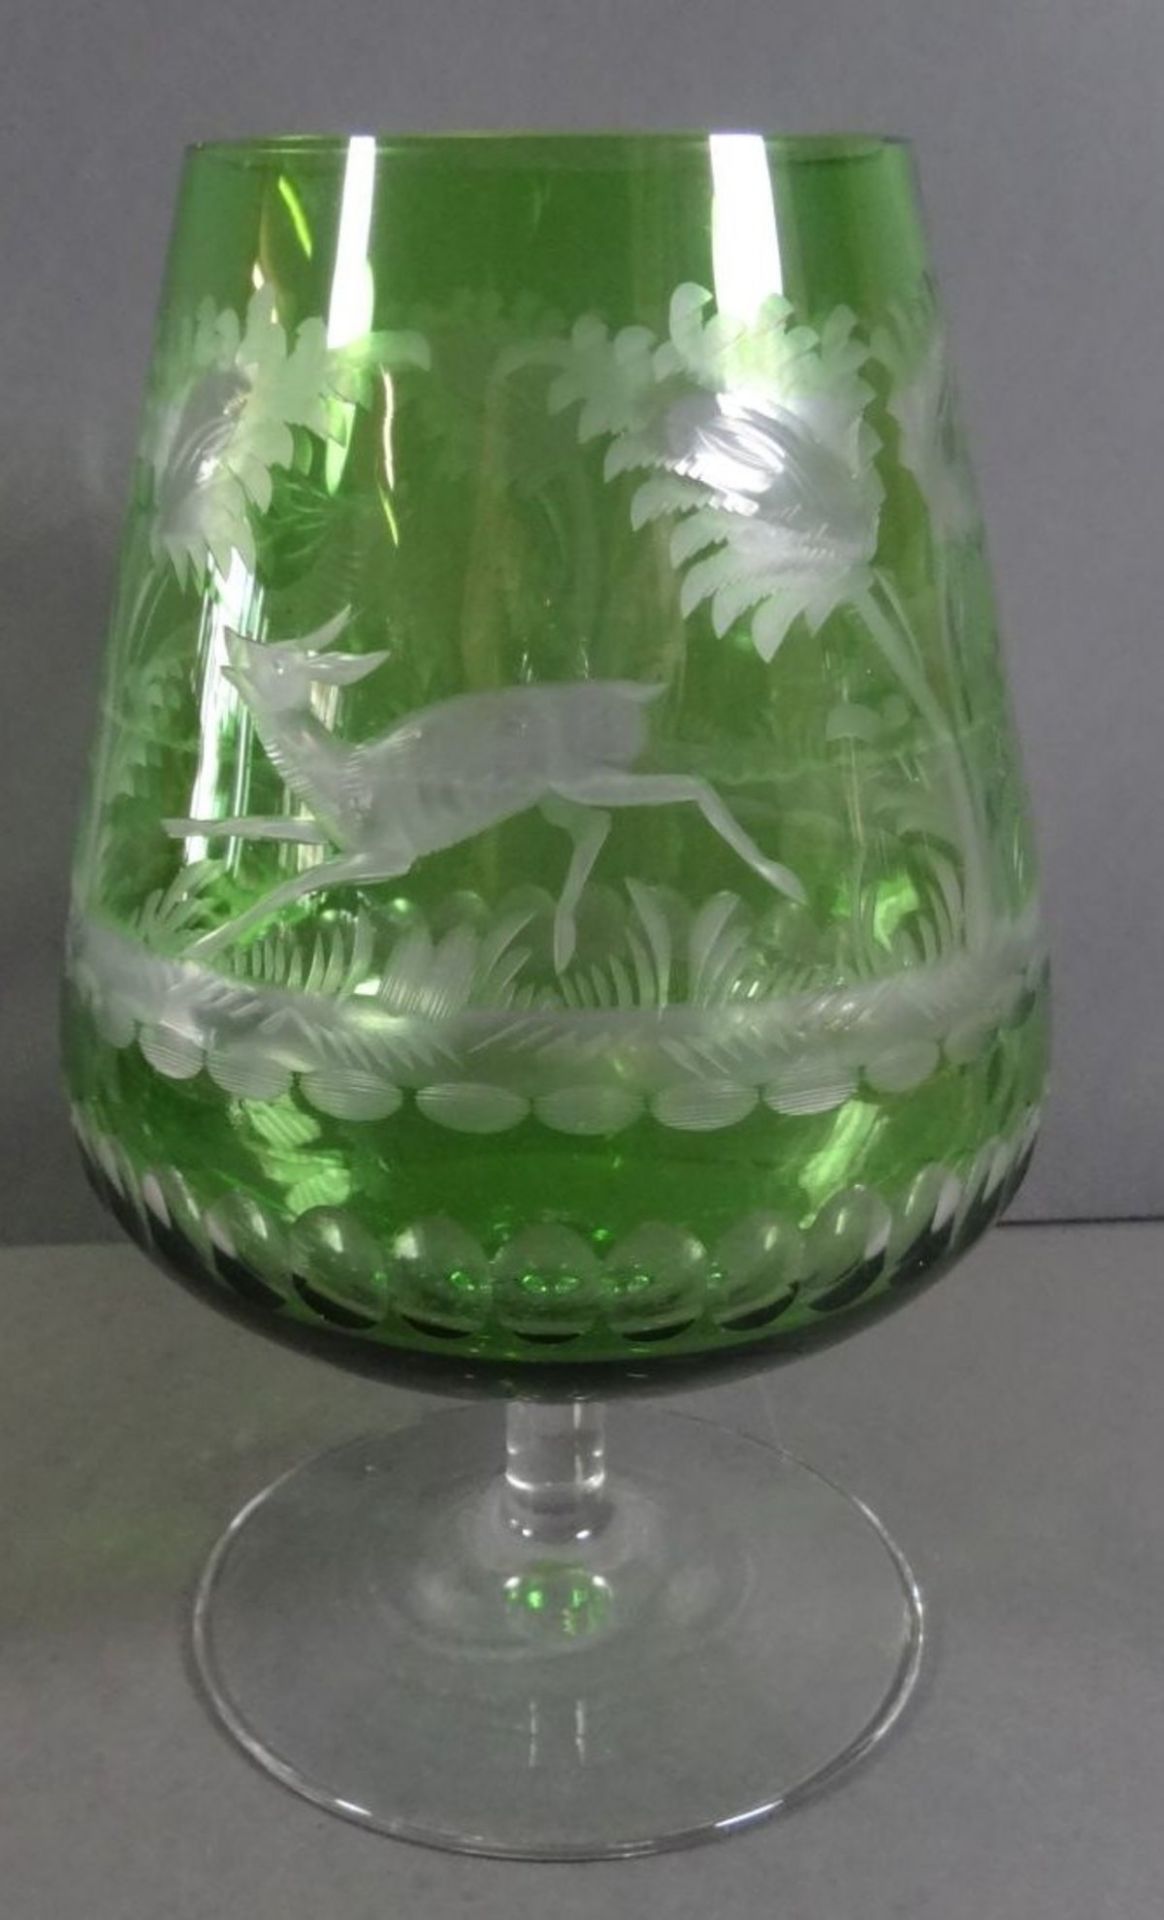 übergrosser Cognac-SDchwenker, grün-klar mit Wild-Motiven, H-18 cm - Bild 3 aus 6